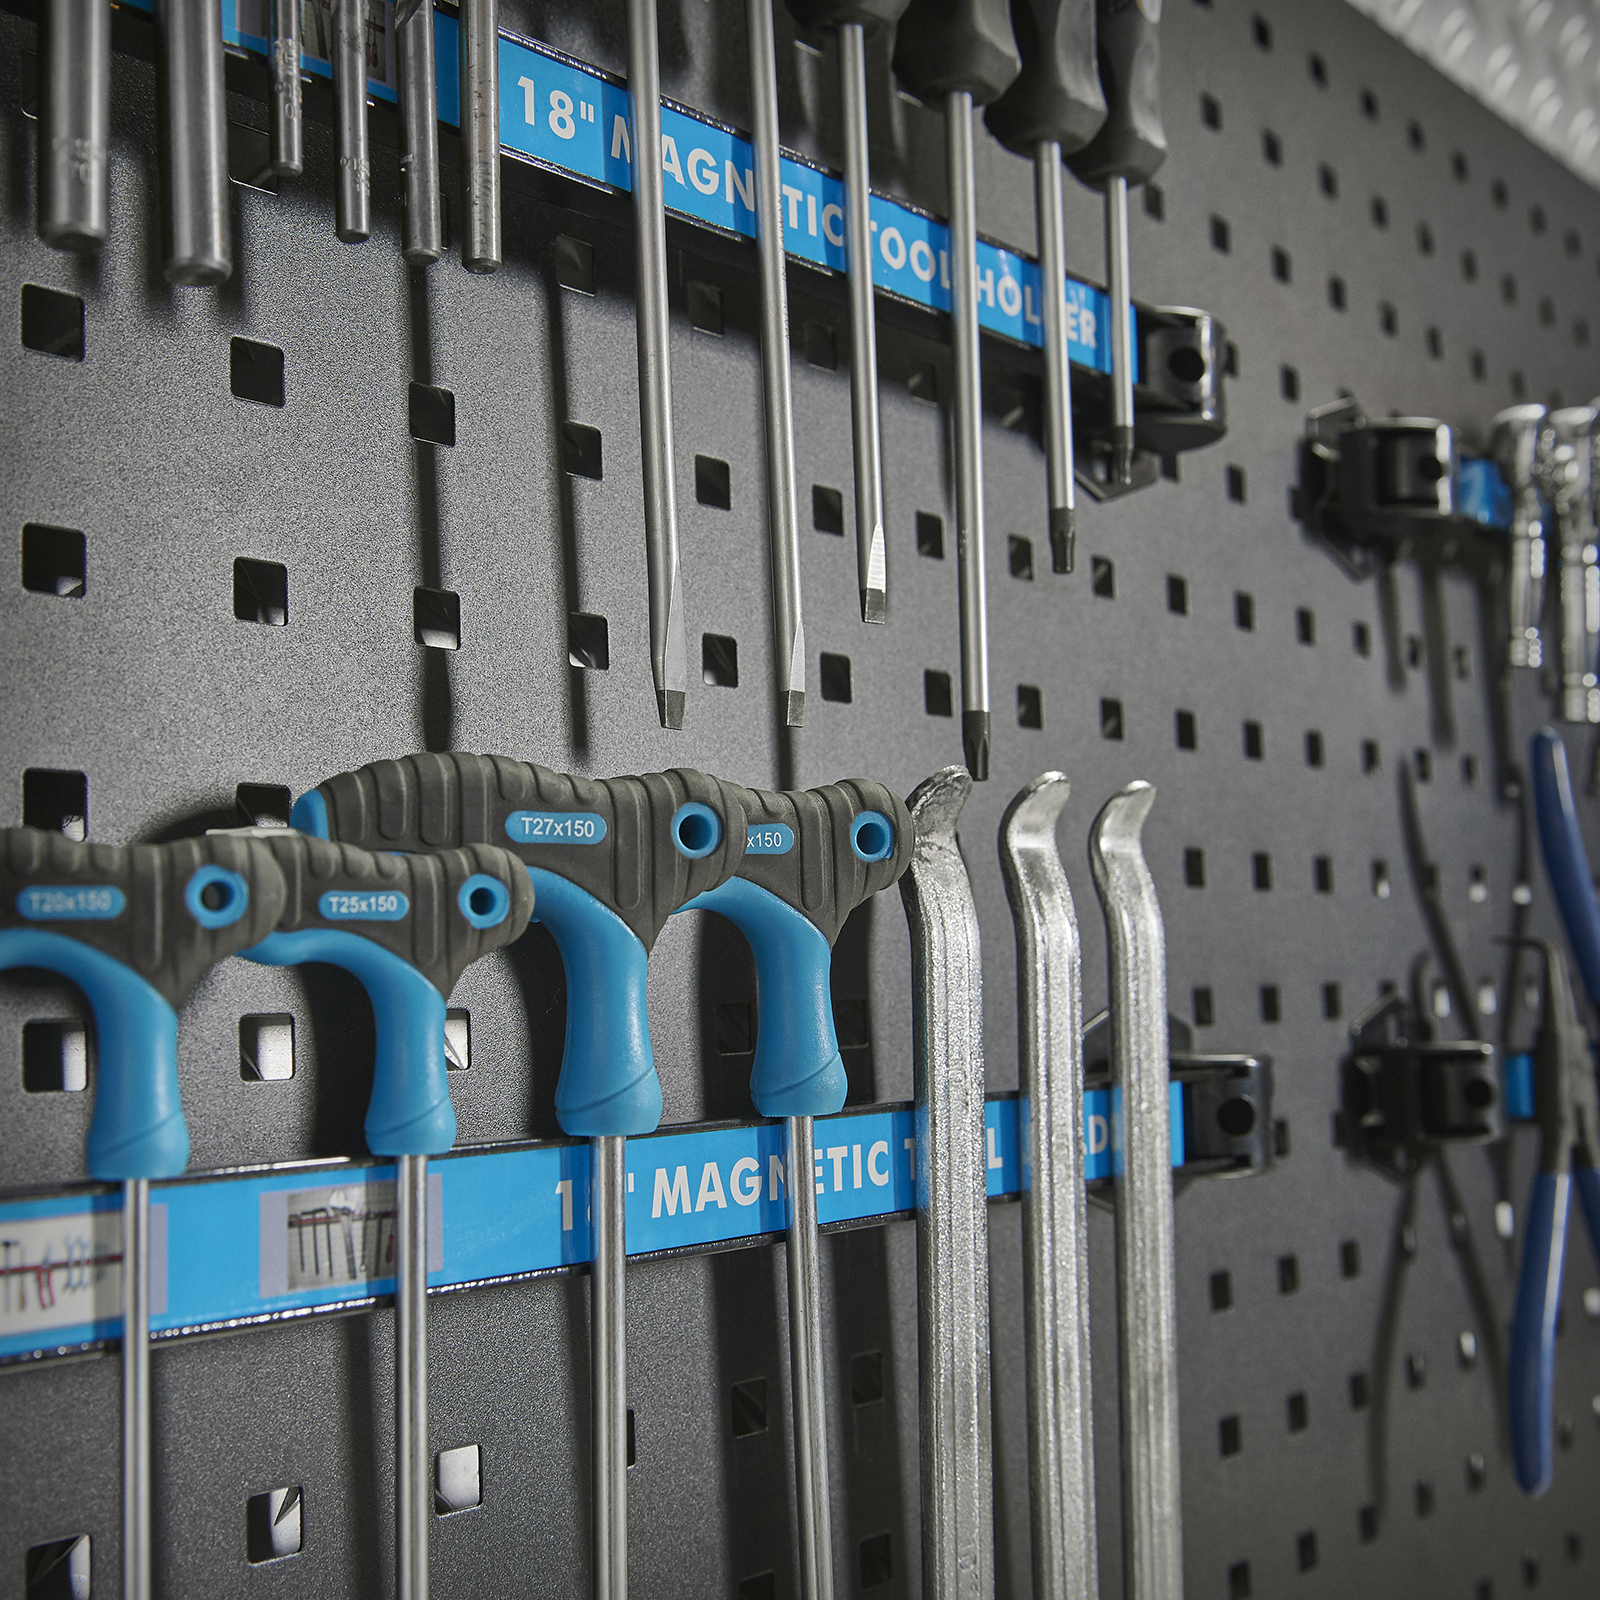 Porte outils magnetique 3 x 60 cm - Porte-outils magnétiques